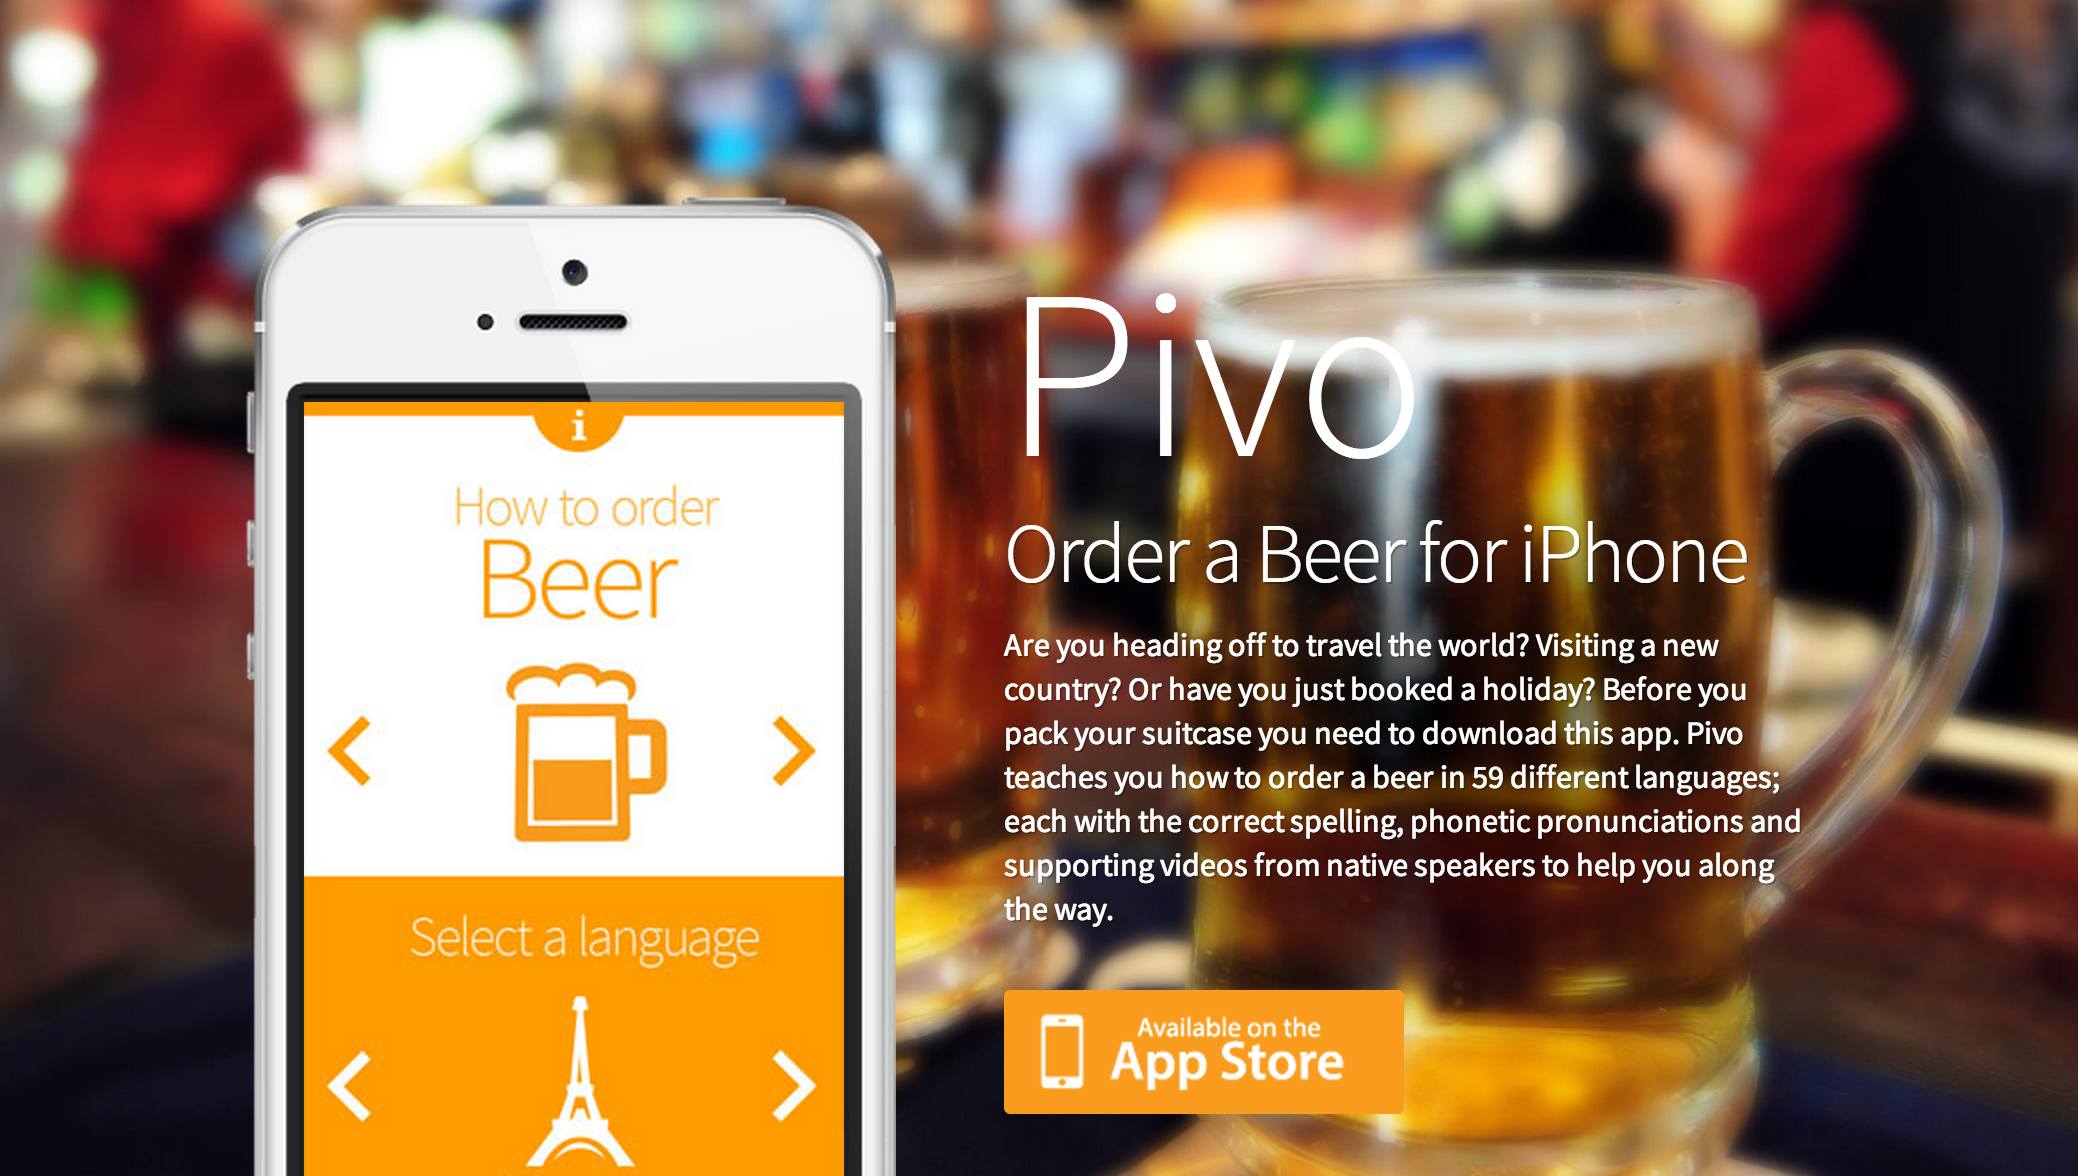 Pivo/Программа про пиво